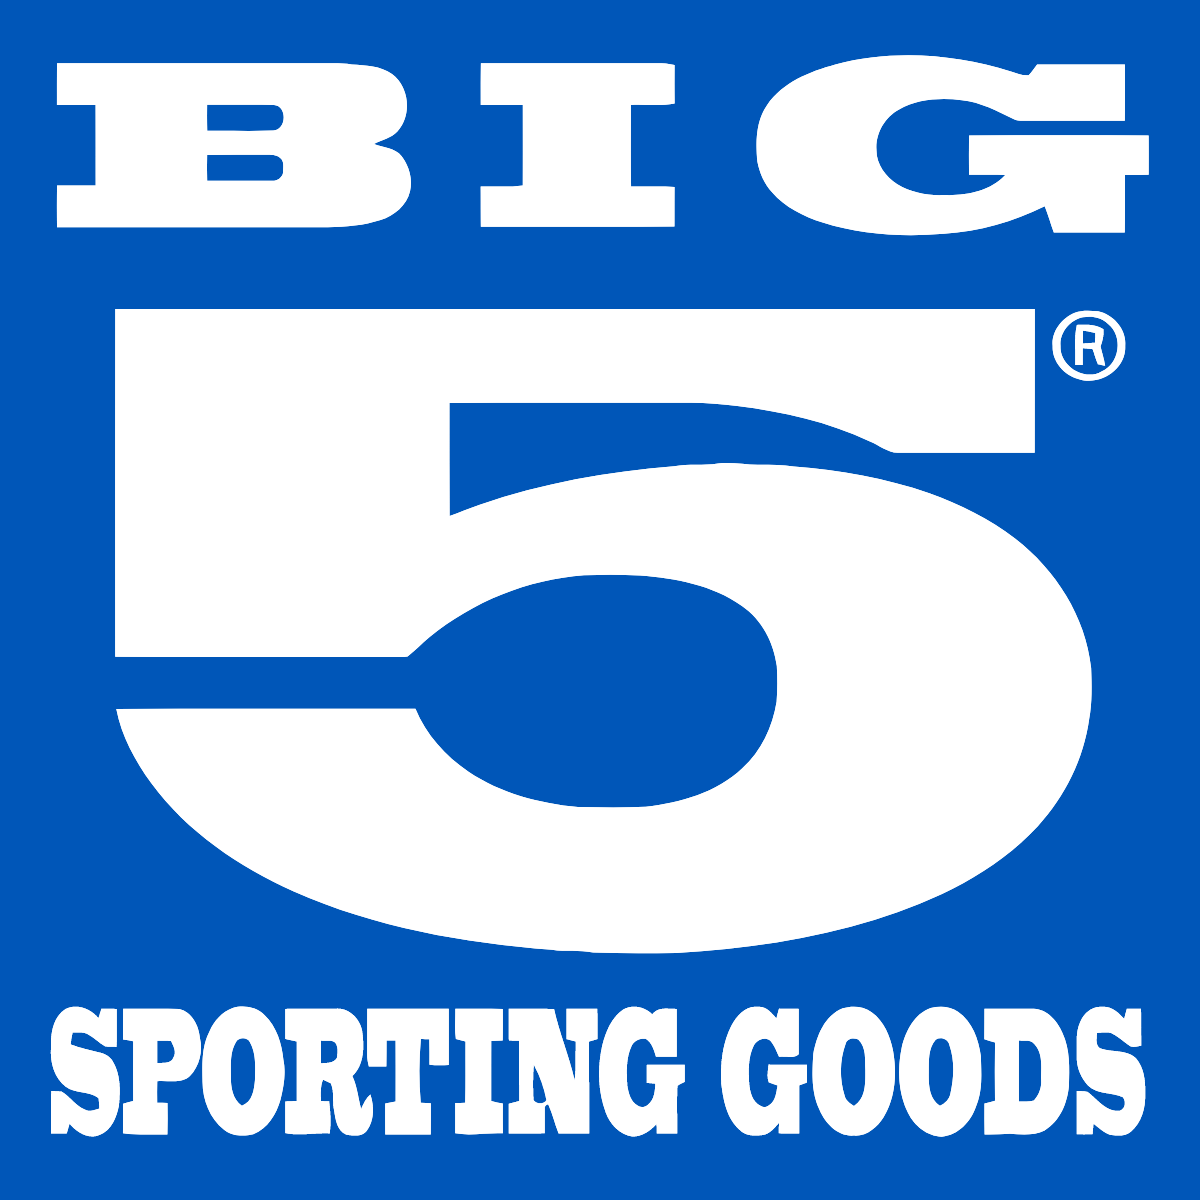 Big 5 Sporting Goods Logo (transparentes PNG)